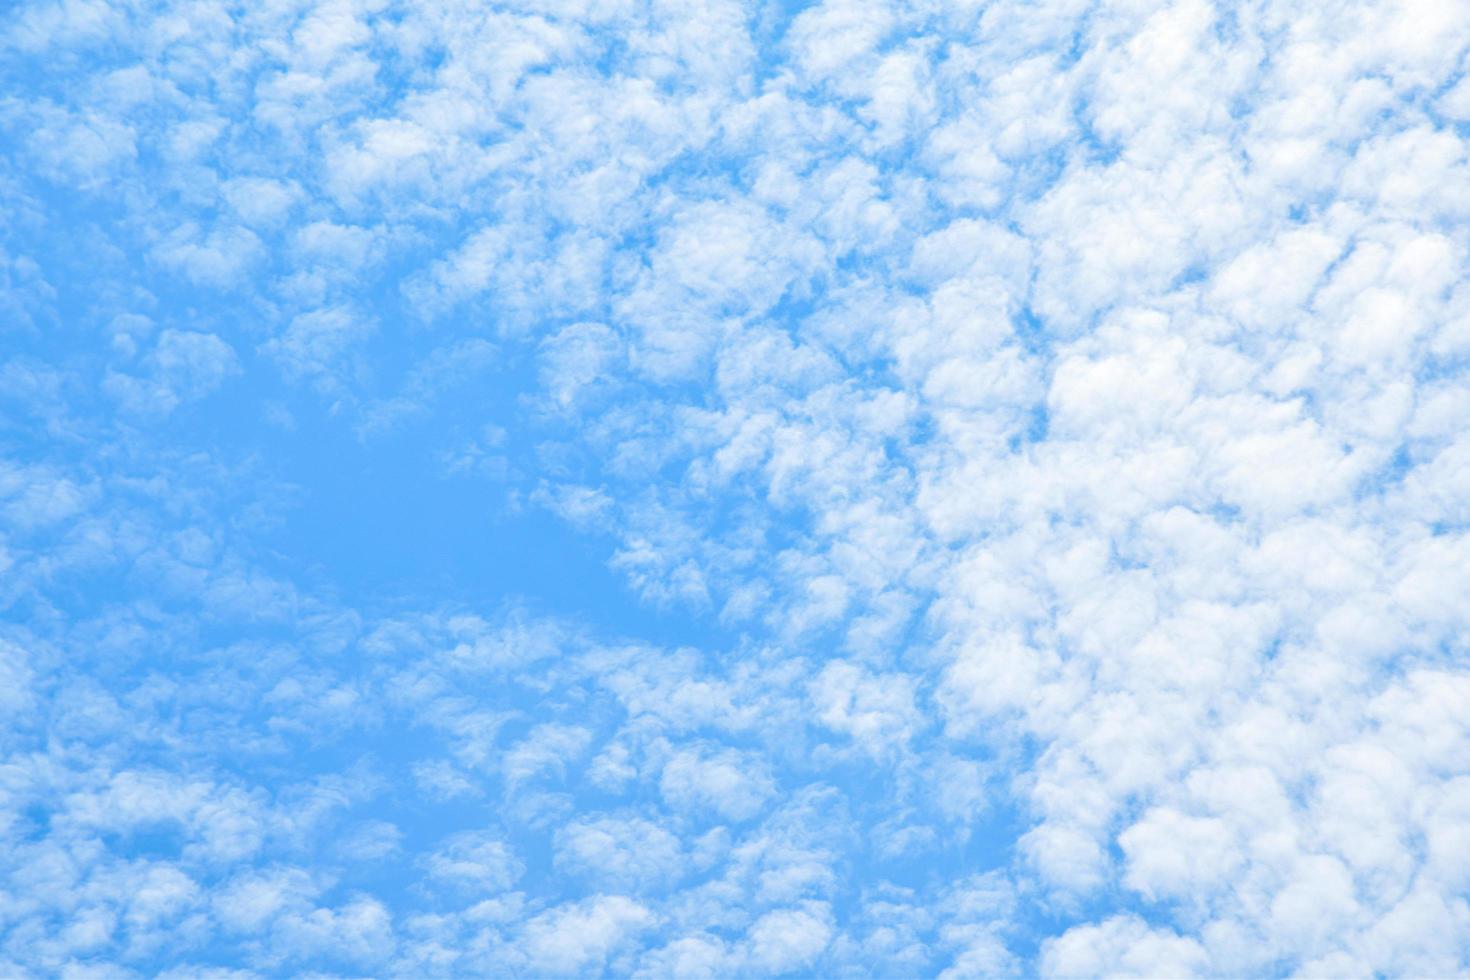 himmel bakgrund med moln. natur abstrakt, blå himmel med några moln ger en känsla av ljus, öppen och luftig foto